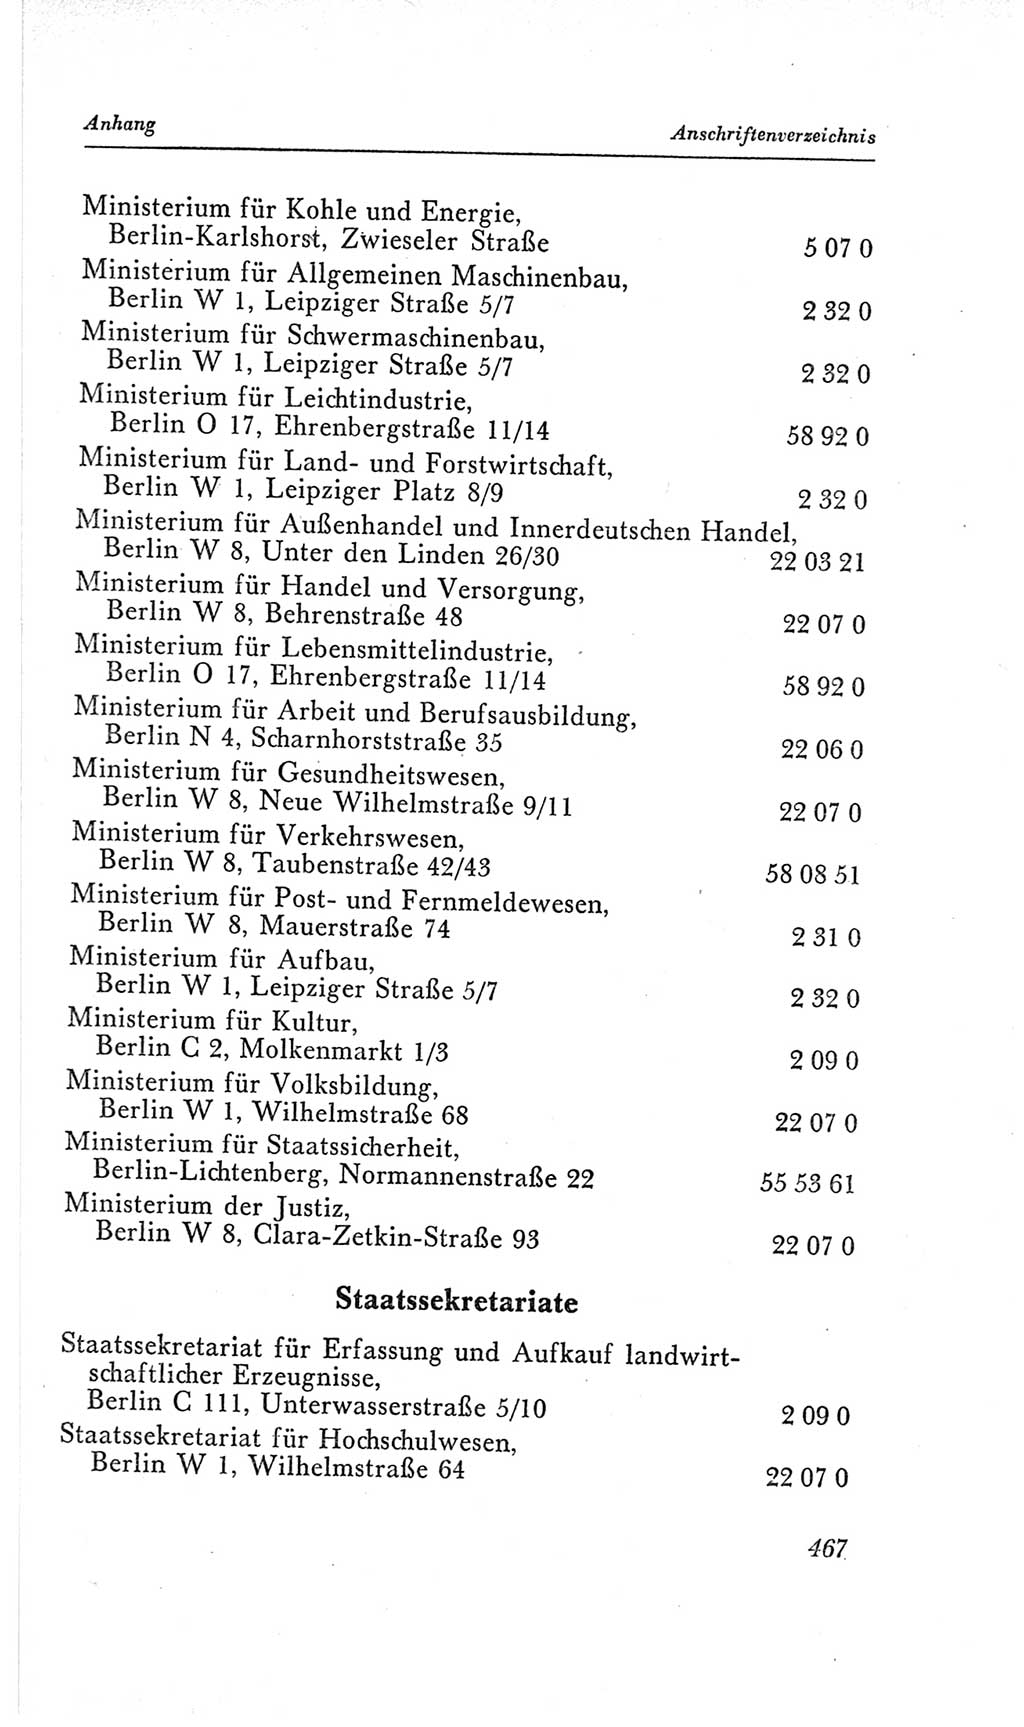 Handbuch der Volkskammer (VK) der Deutschen Demokratischen Republik (DDR), 2. Wahlperiode 1954-1958, Seite 467 (Hdb. VK. DDR, 2. WP. 1954-1958, S. 467)